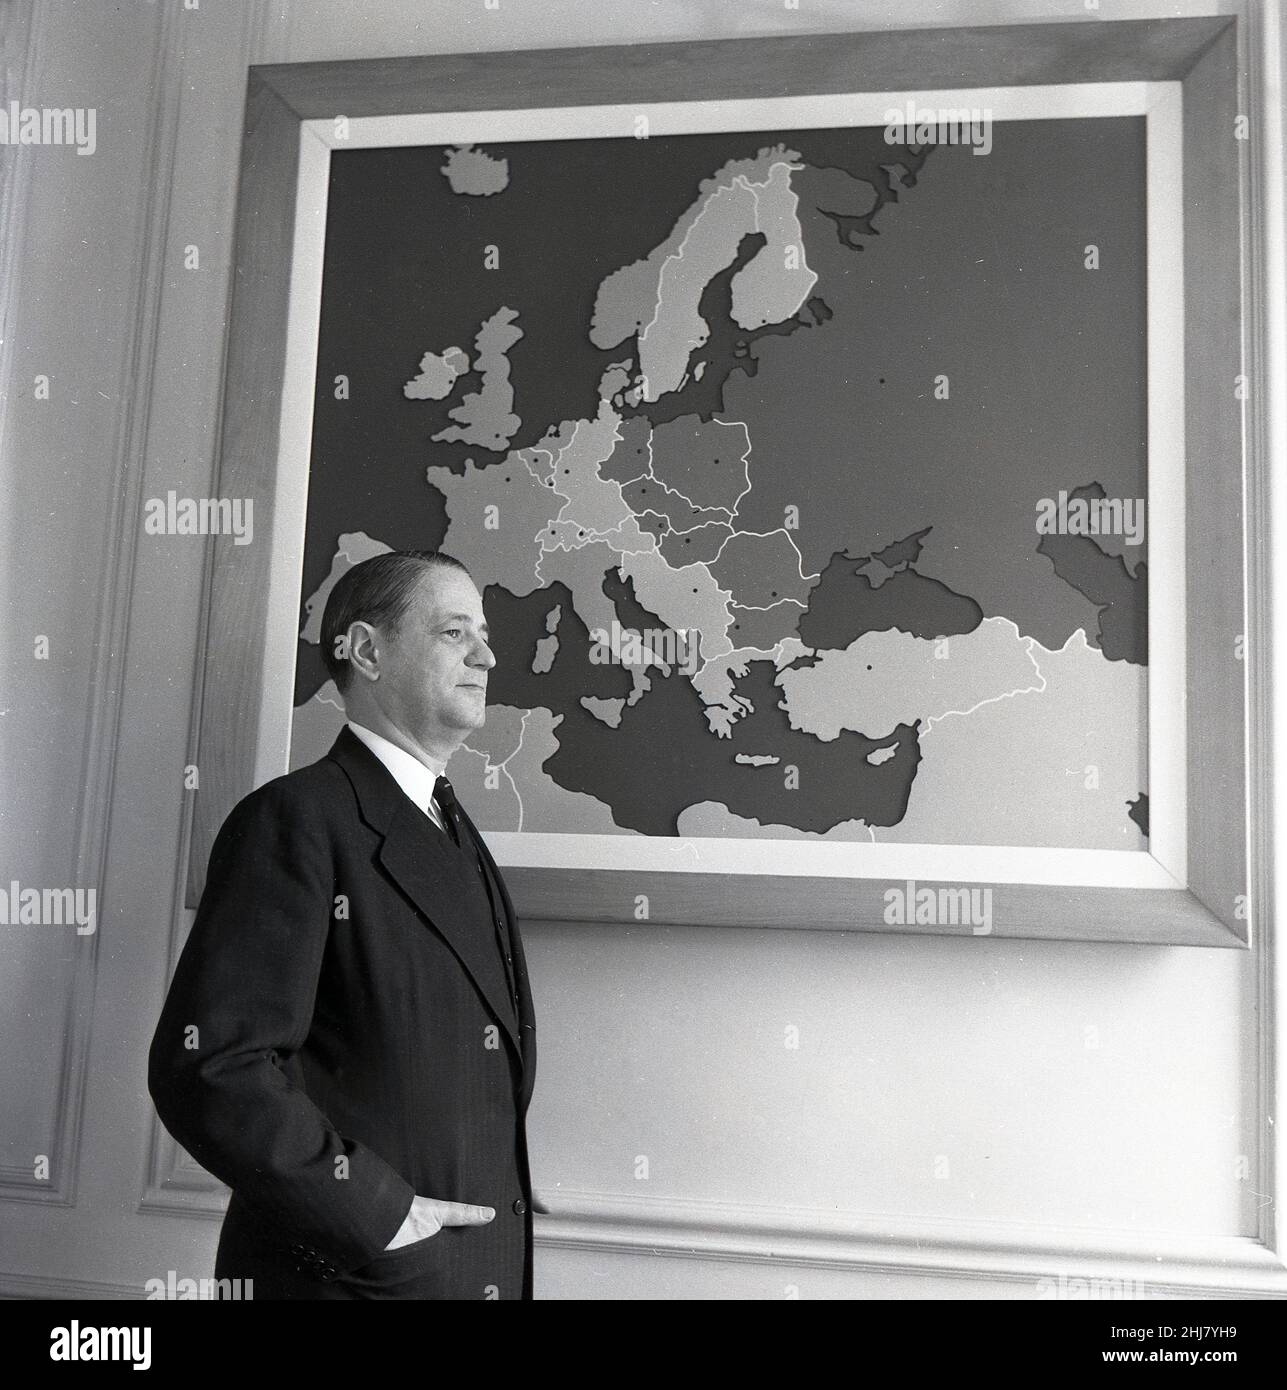 1960s, historisch, in einem Raum, ein Gentleman im dreiteiligen Anzug, der US-Botschafter für die NATO steht neben einem gerahmten Bild an der Wand, das eine Landkarte von Europa zeigt. Stockfoto